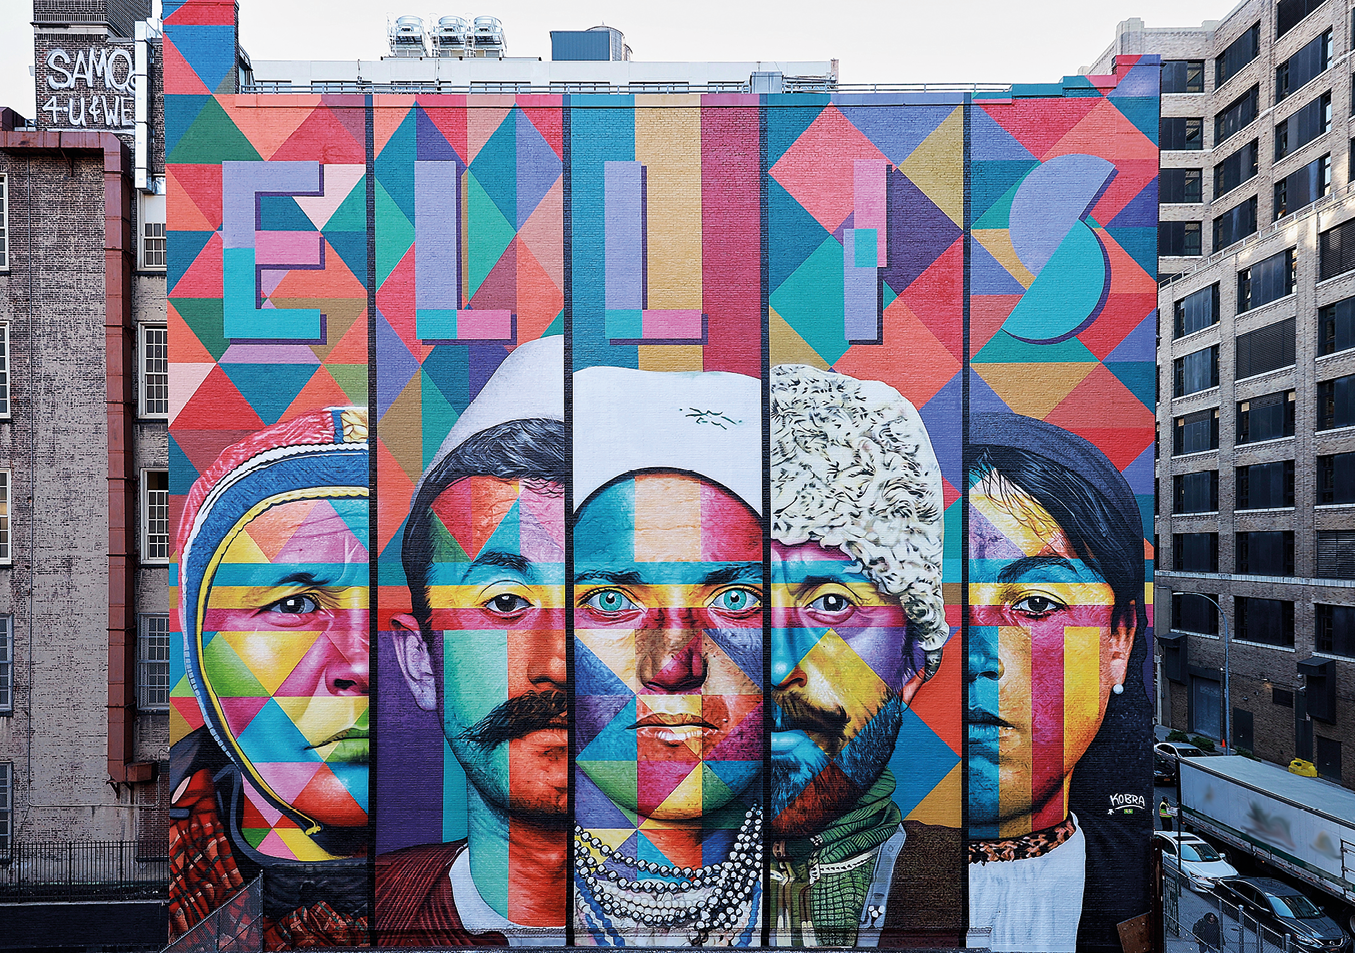 Fotografia. Painel colorido na lateral de edifício com o nome ELLIS acima e abaixo, rosto de 5 pessoas entre homens e mulheres. À direita, rua com carros e construções.